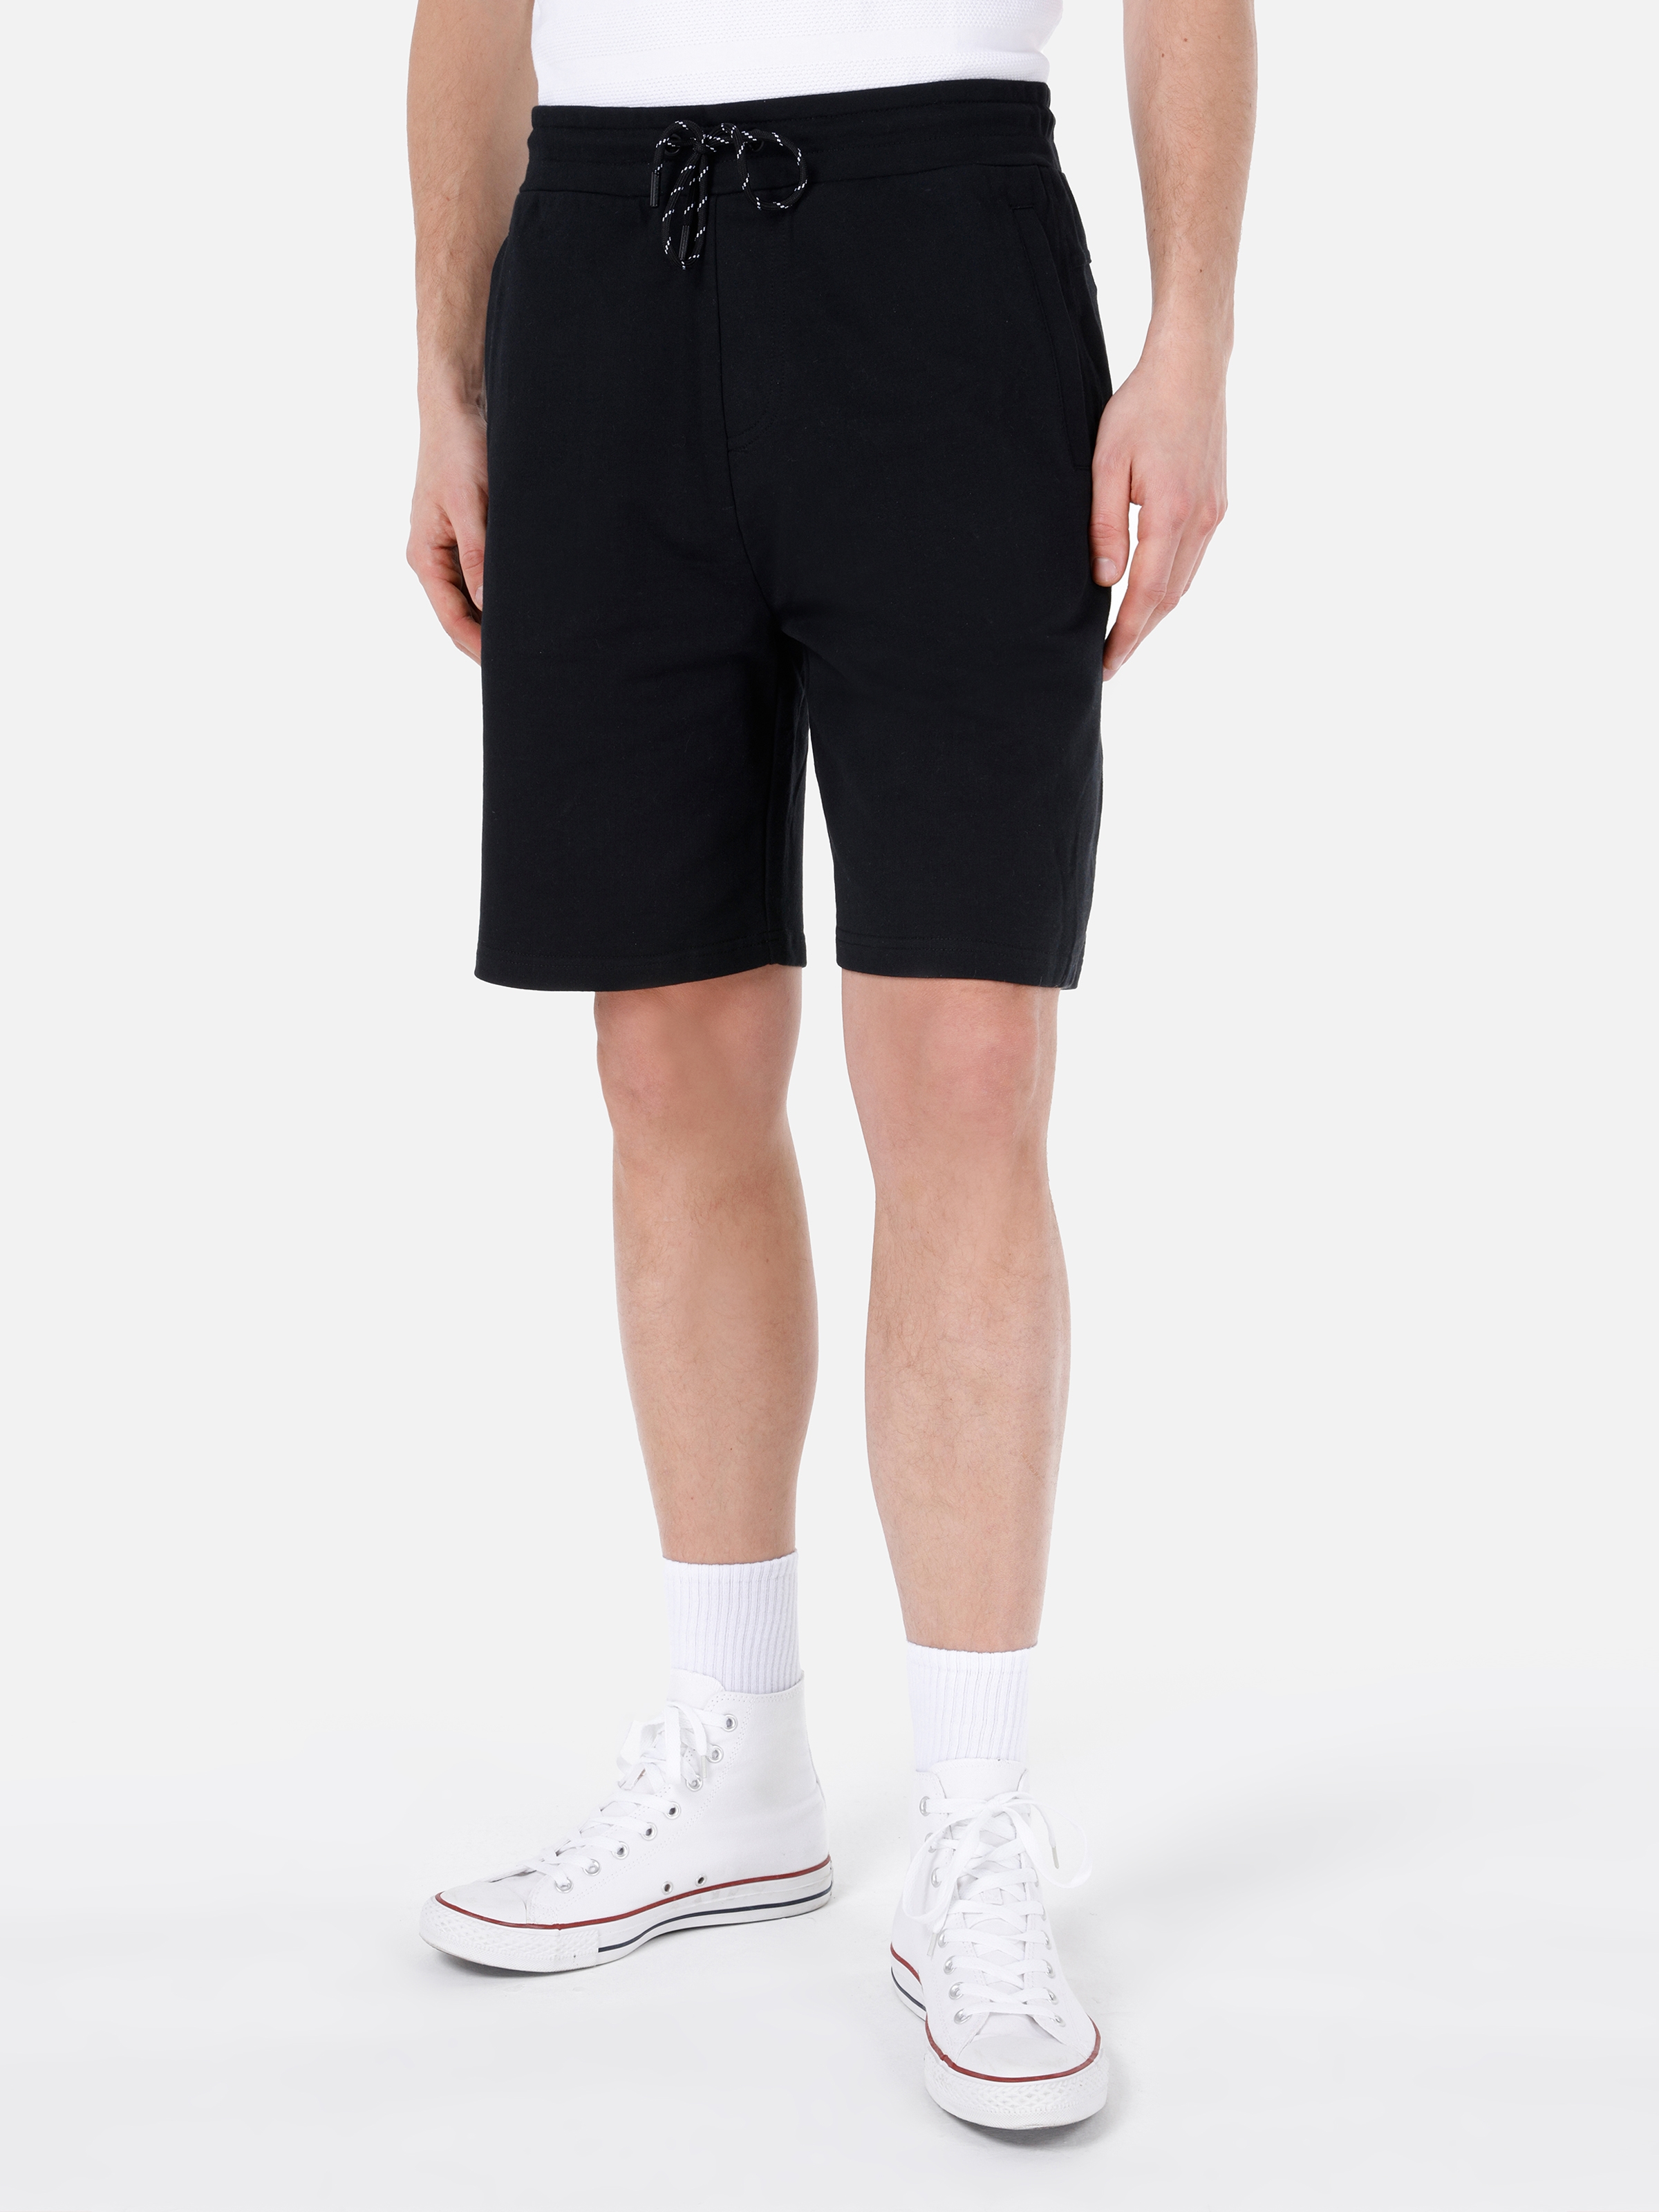 Afișați detalii pentru Short / Pantaloni Scurti De Barbati Negru Regular Fit  